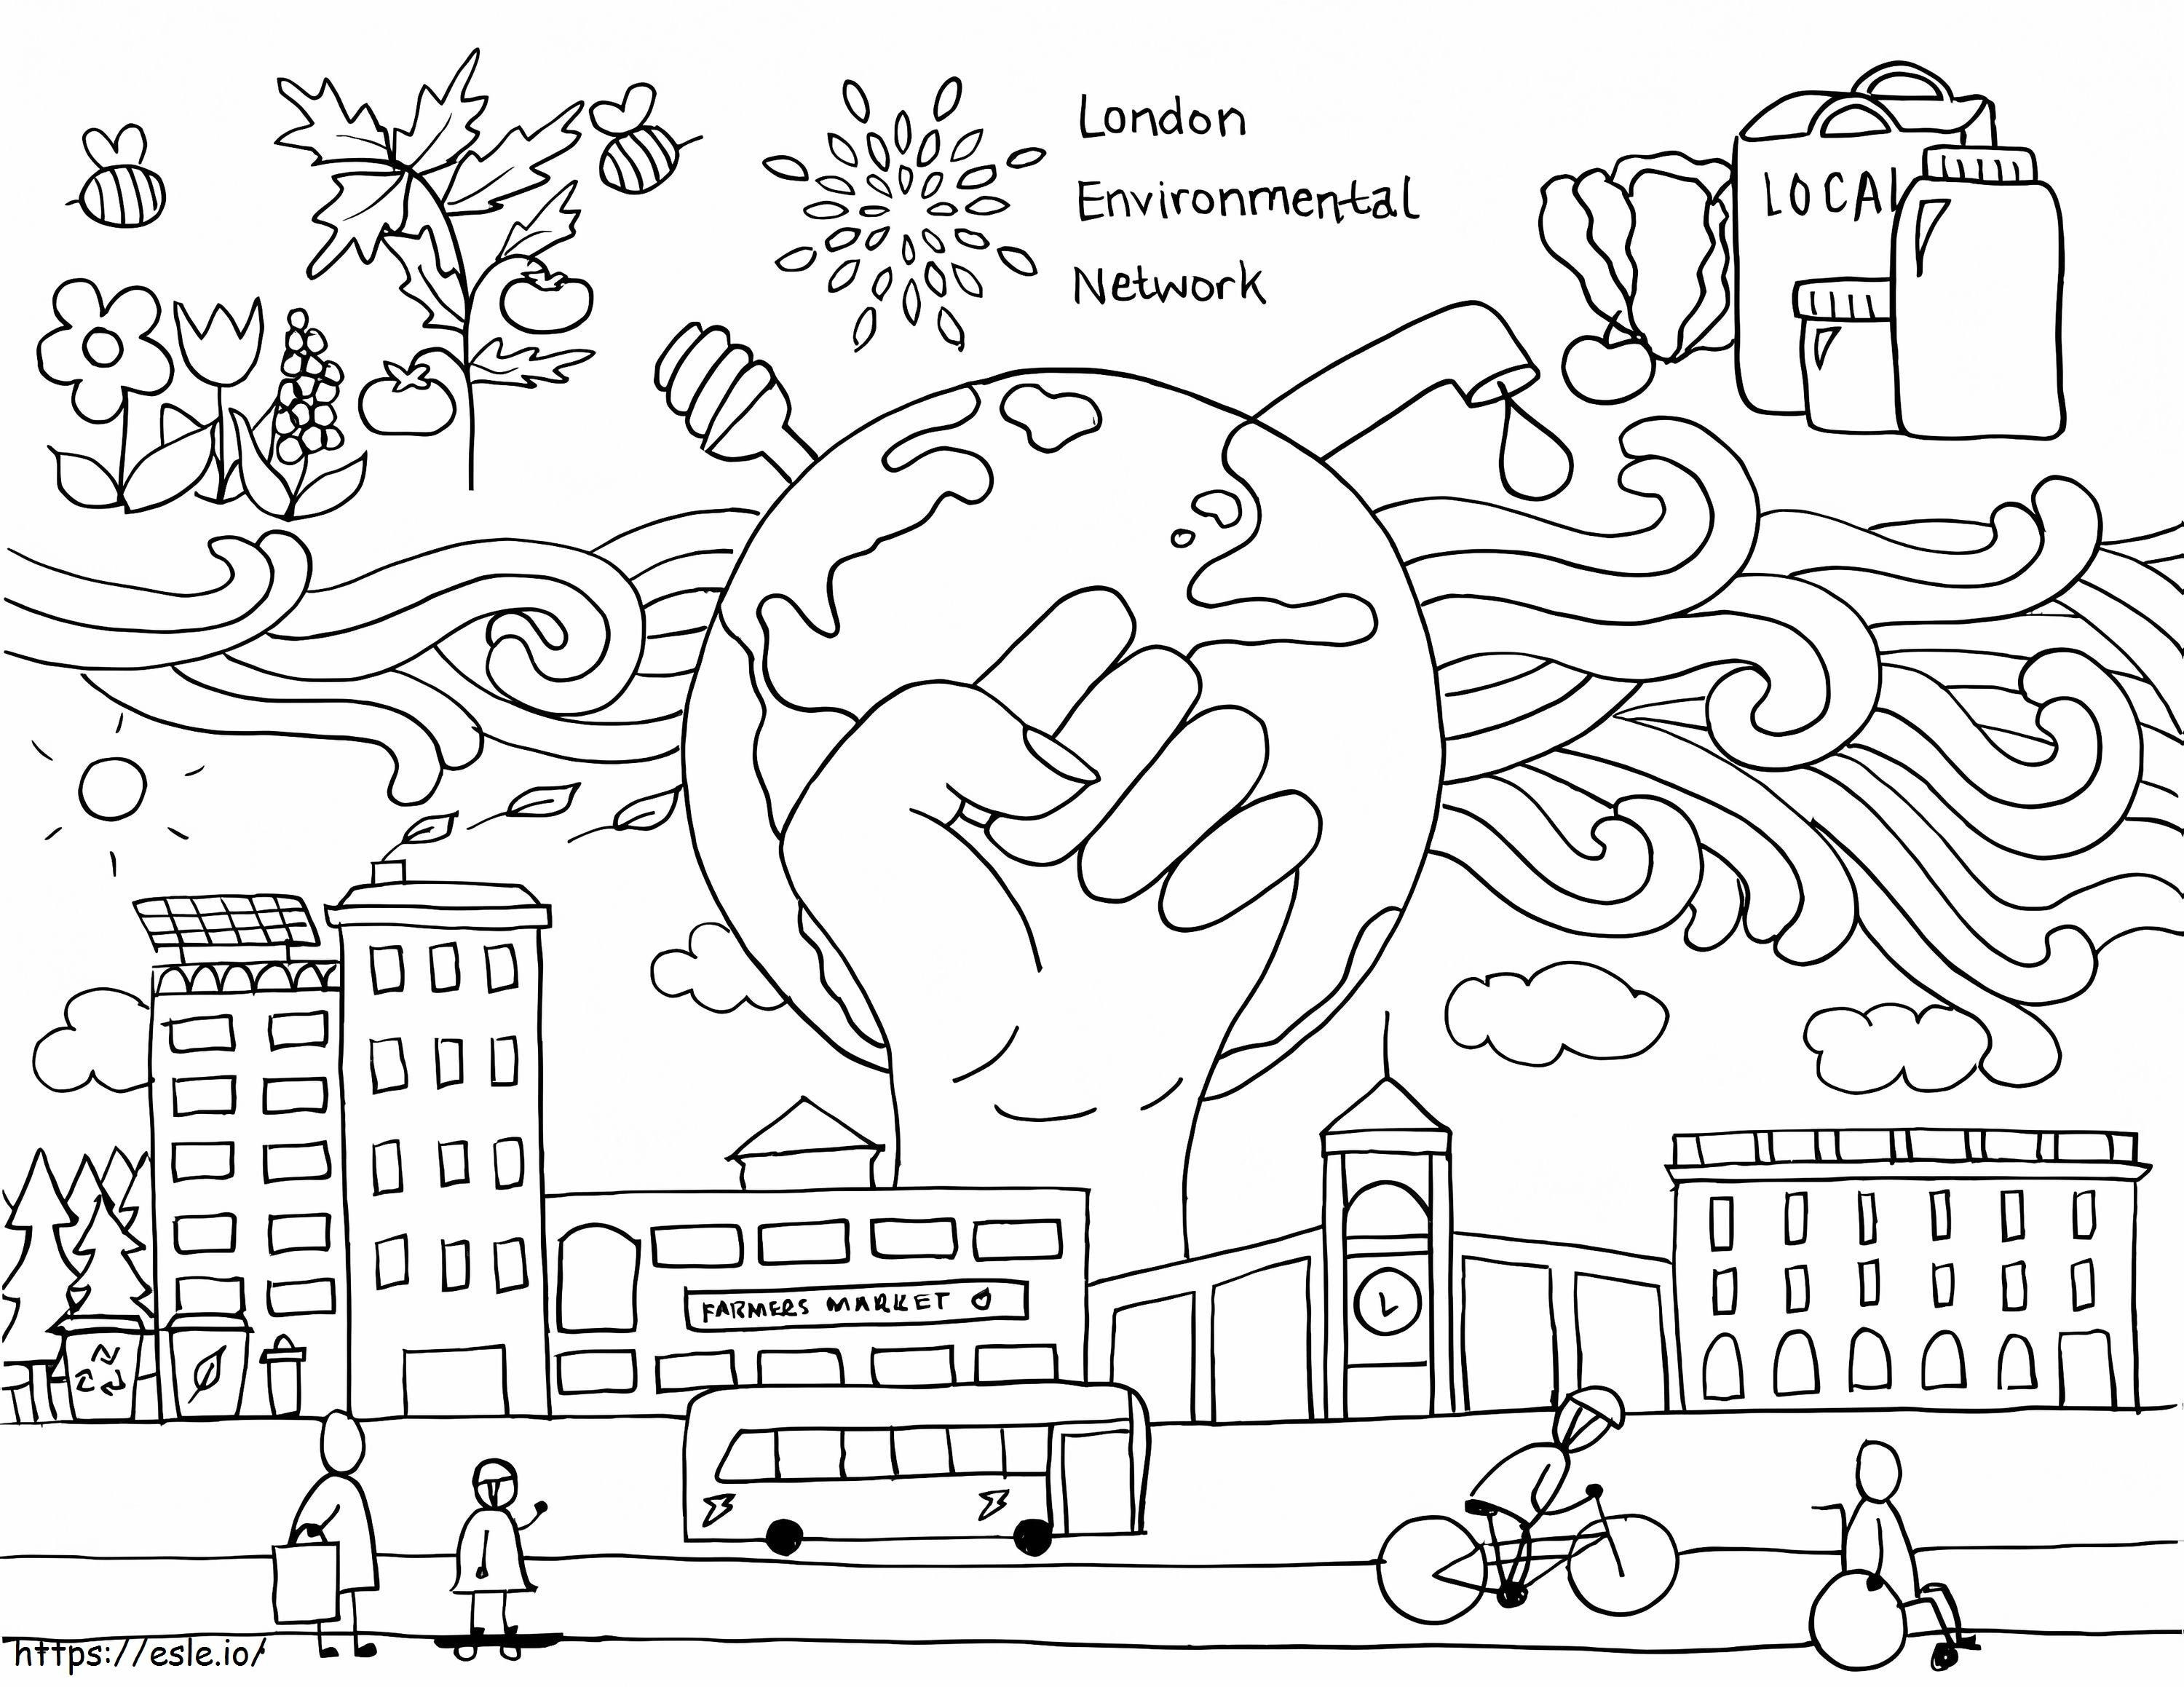 Rede Ambiental de Londres para colorir